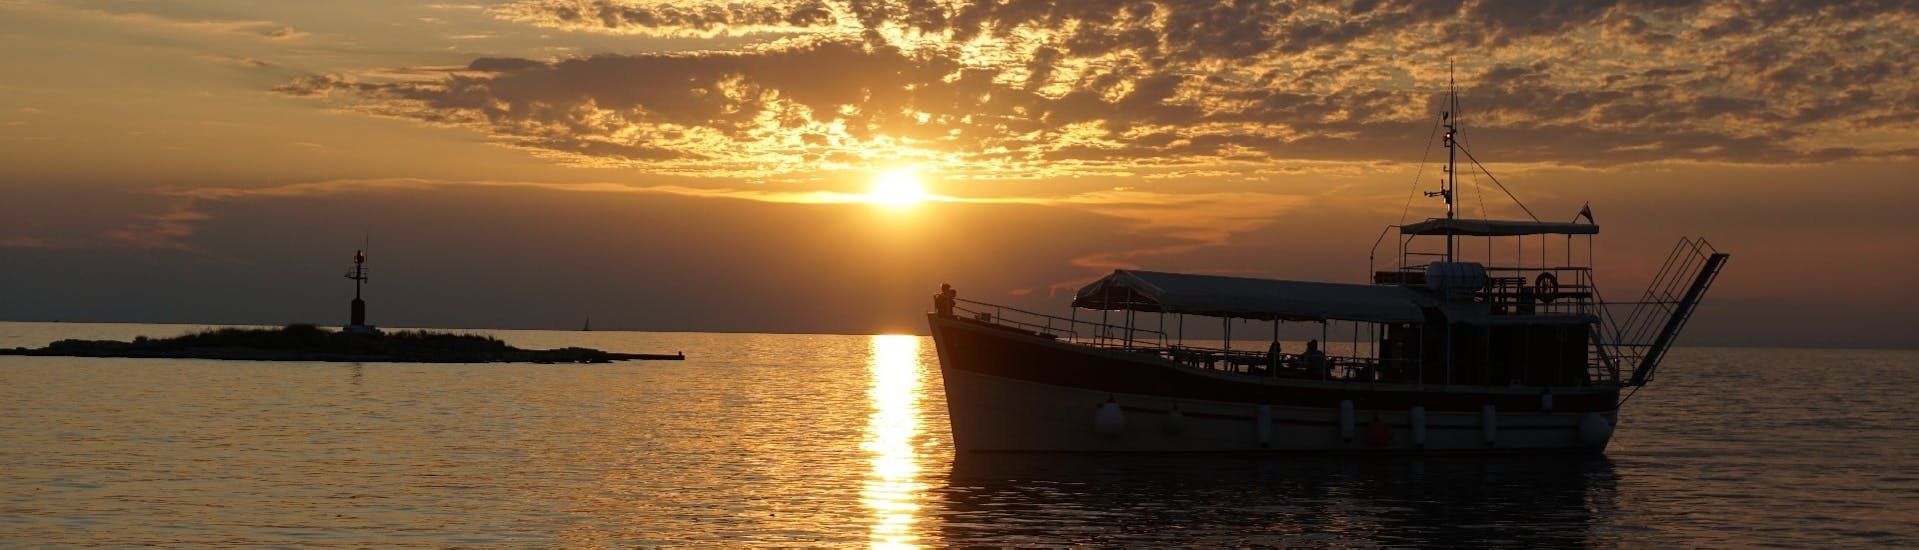 Gita in barca da Parenzo (Poreč) a Parenzo (Poreč) al tramonto e visita turistica.